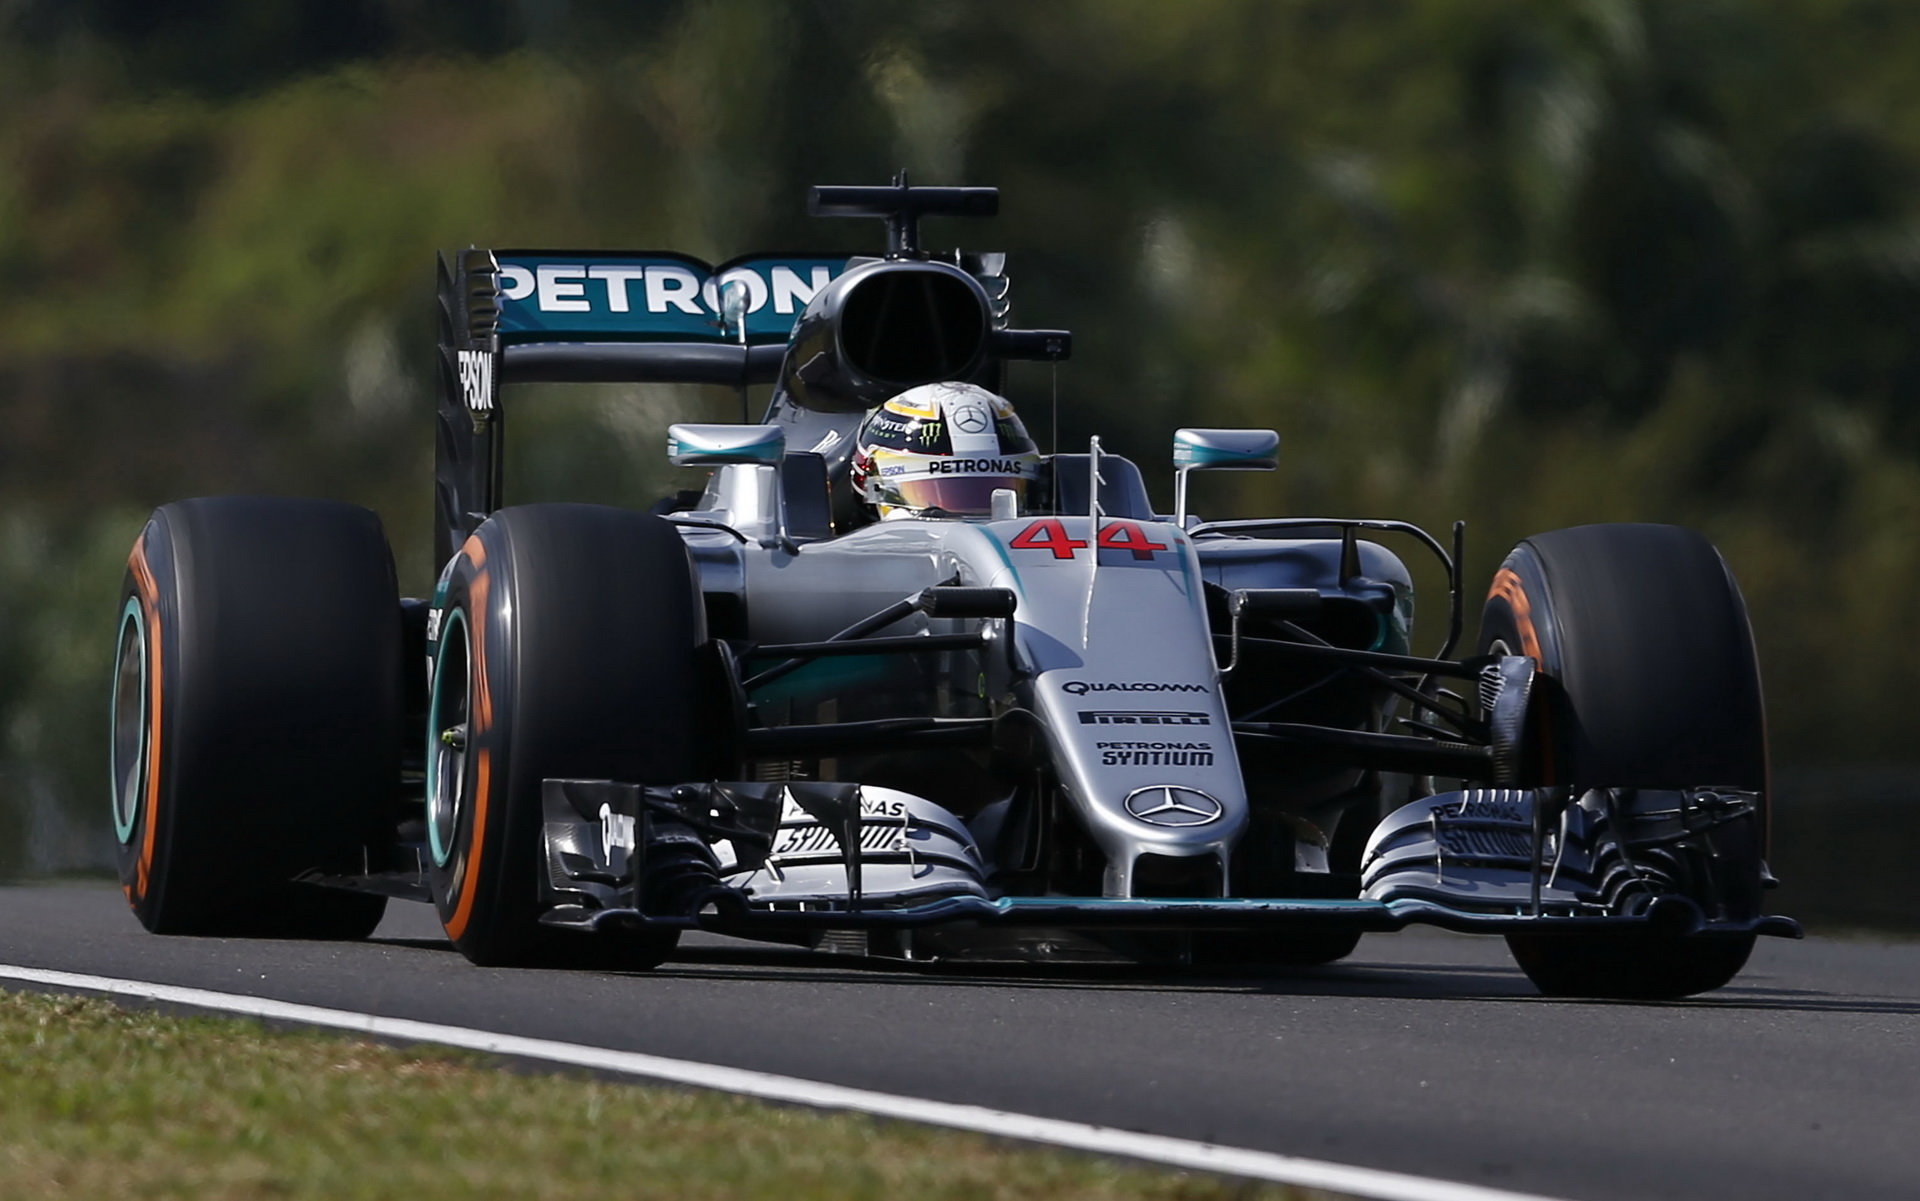 Verstappena pod tlak dostal nakonec Hamilton na tvrdých pneumatikách místo Vettela na rychle odcházejících měkkých